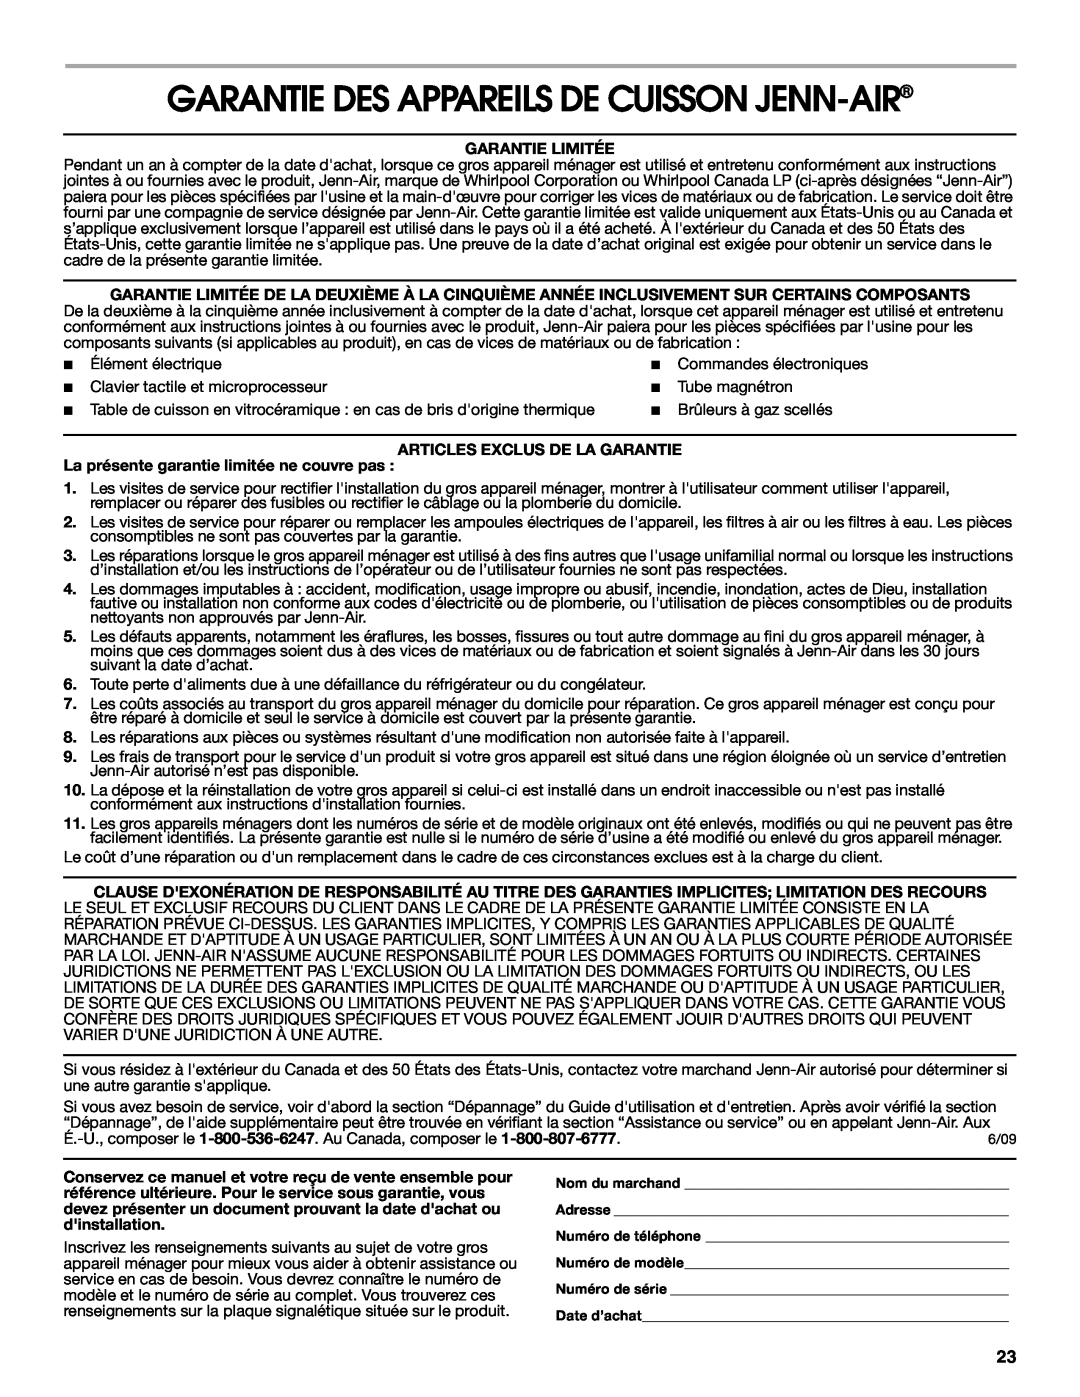 Jenn-Air W10197056B manual Garantie Des Appareils De Cuisson Jenn-Air, Garantie Limitée, Articles Exclus De La Garantie 